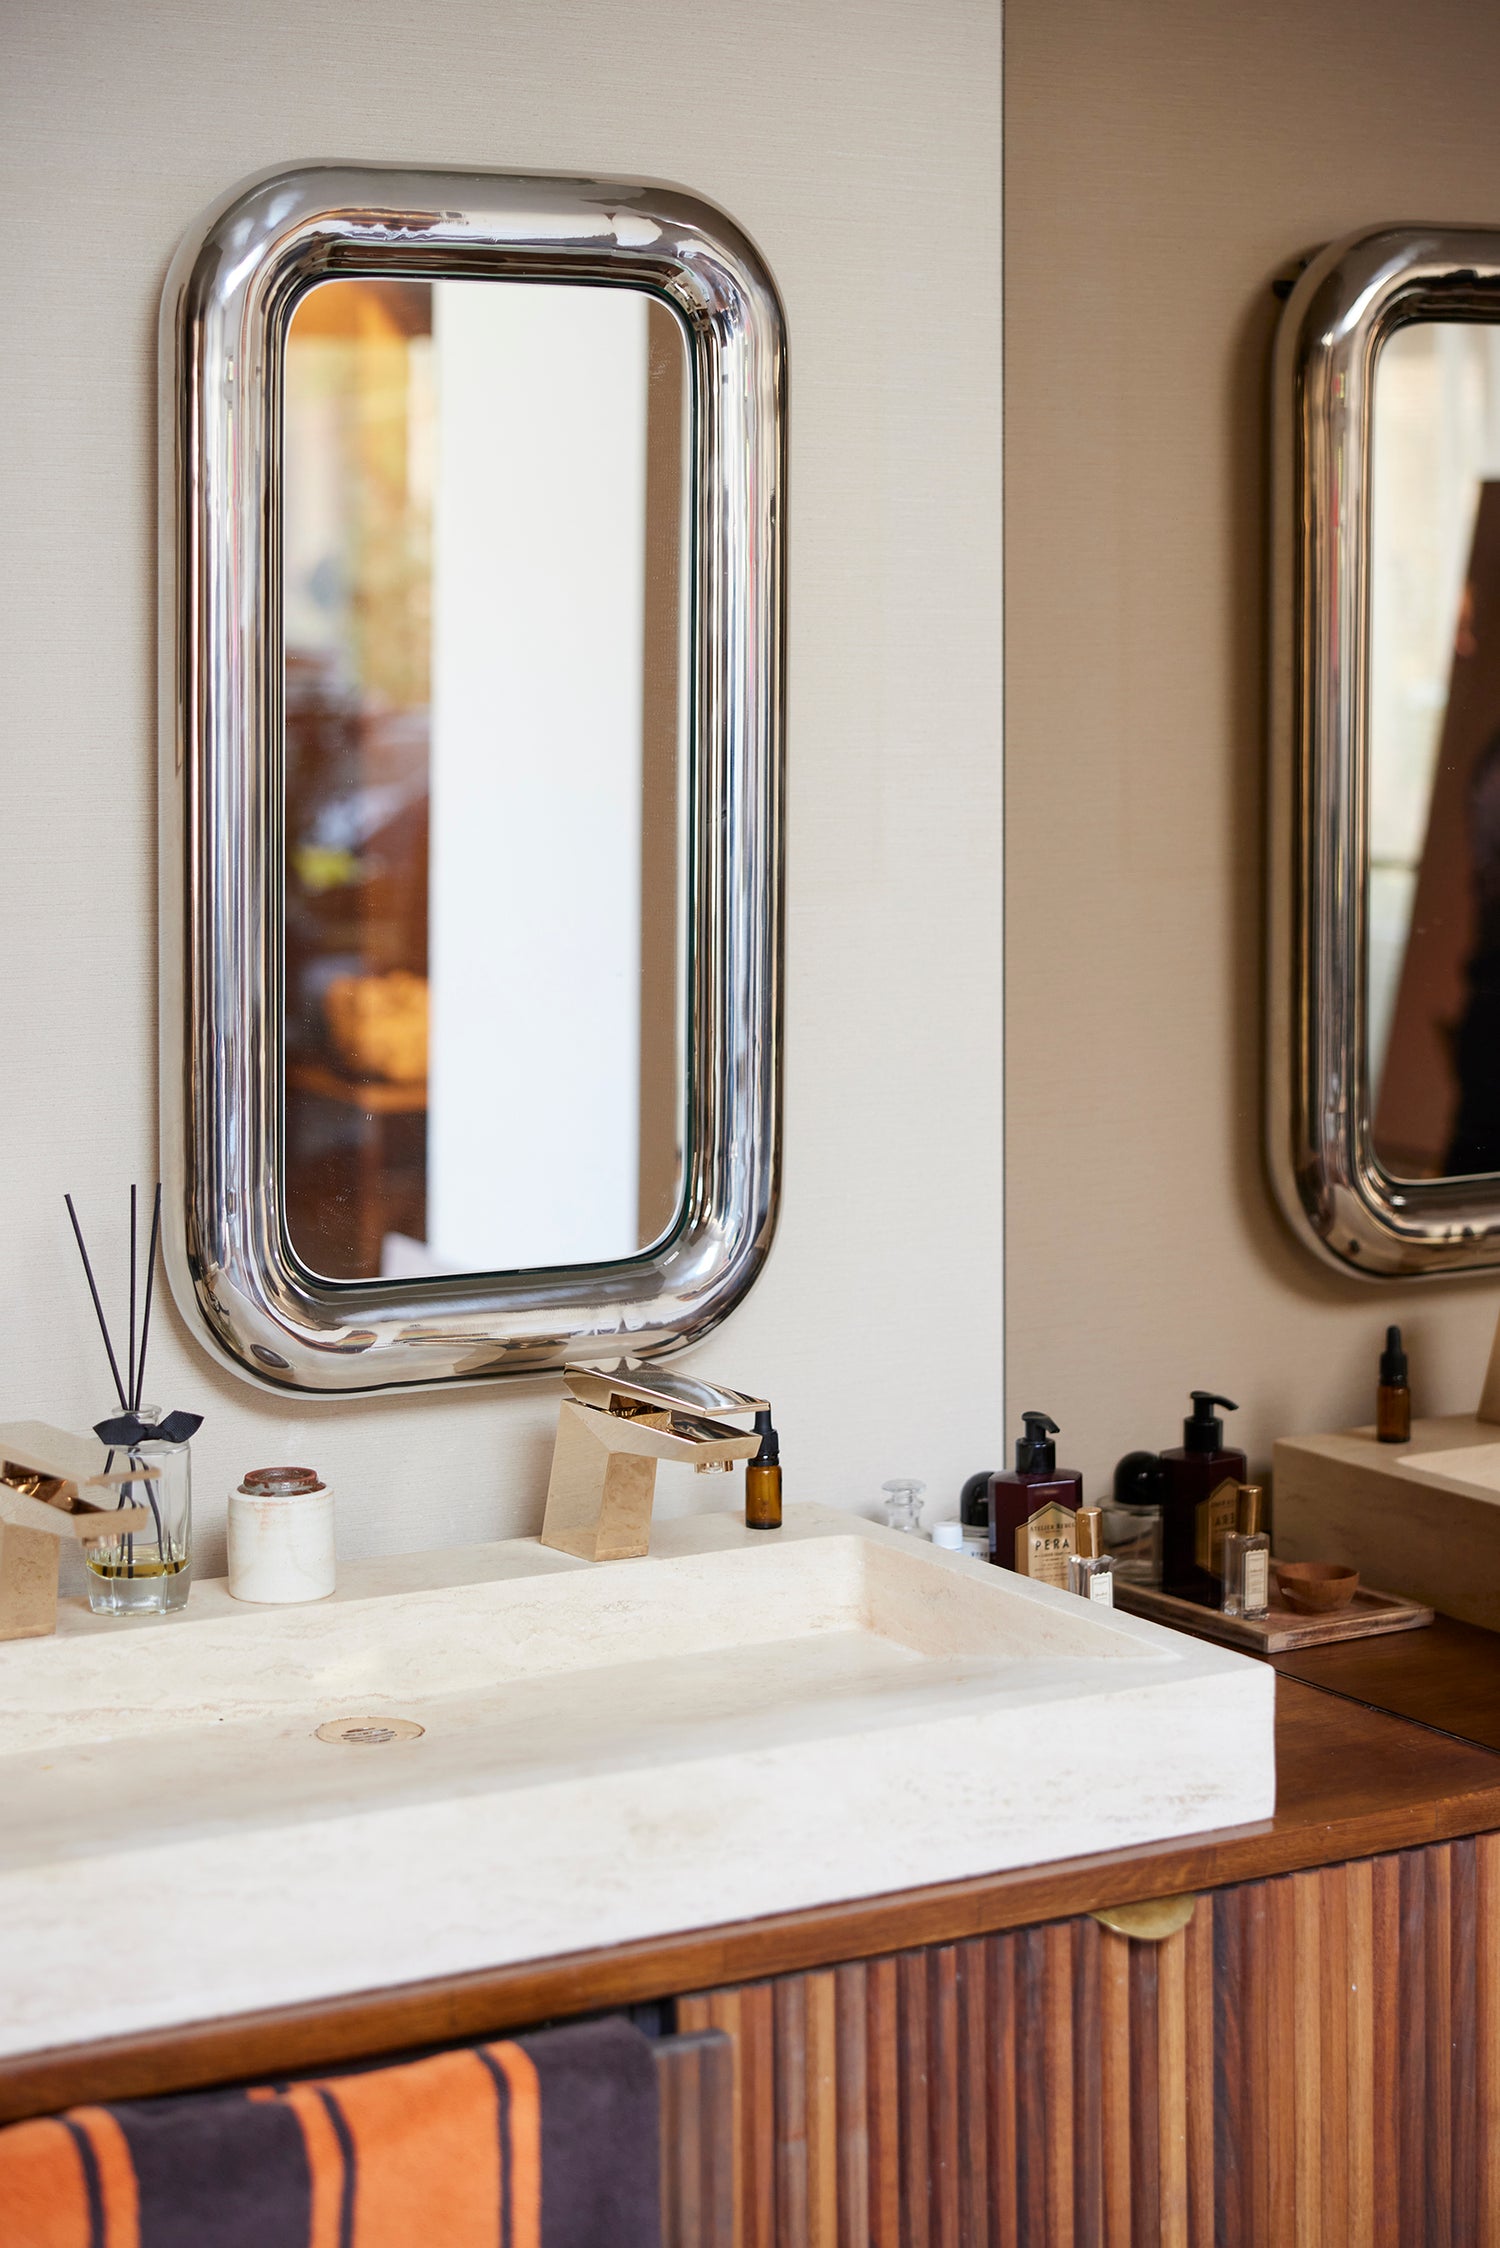 Et nydelig speil med kraftig ramme i forkrommet stål fra HK Living. Et superfint speil å bruke på badet, i gangen eller på et soverom. Speilet finnes i to størrelser.